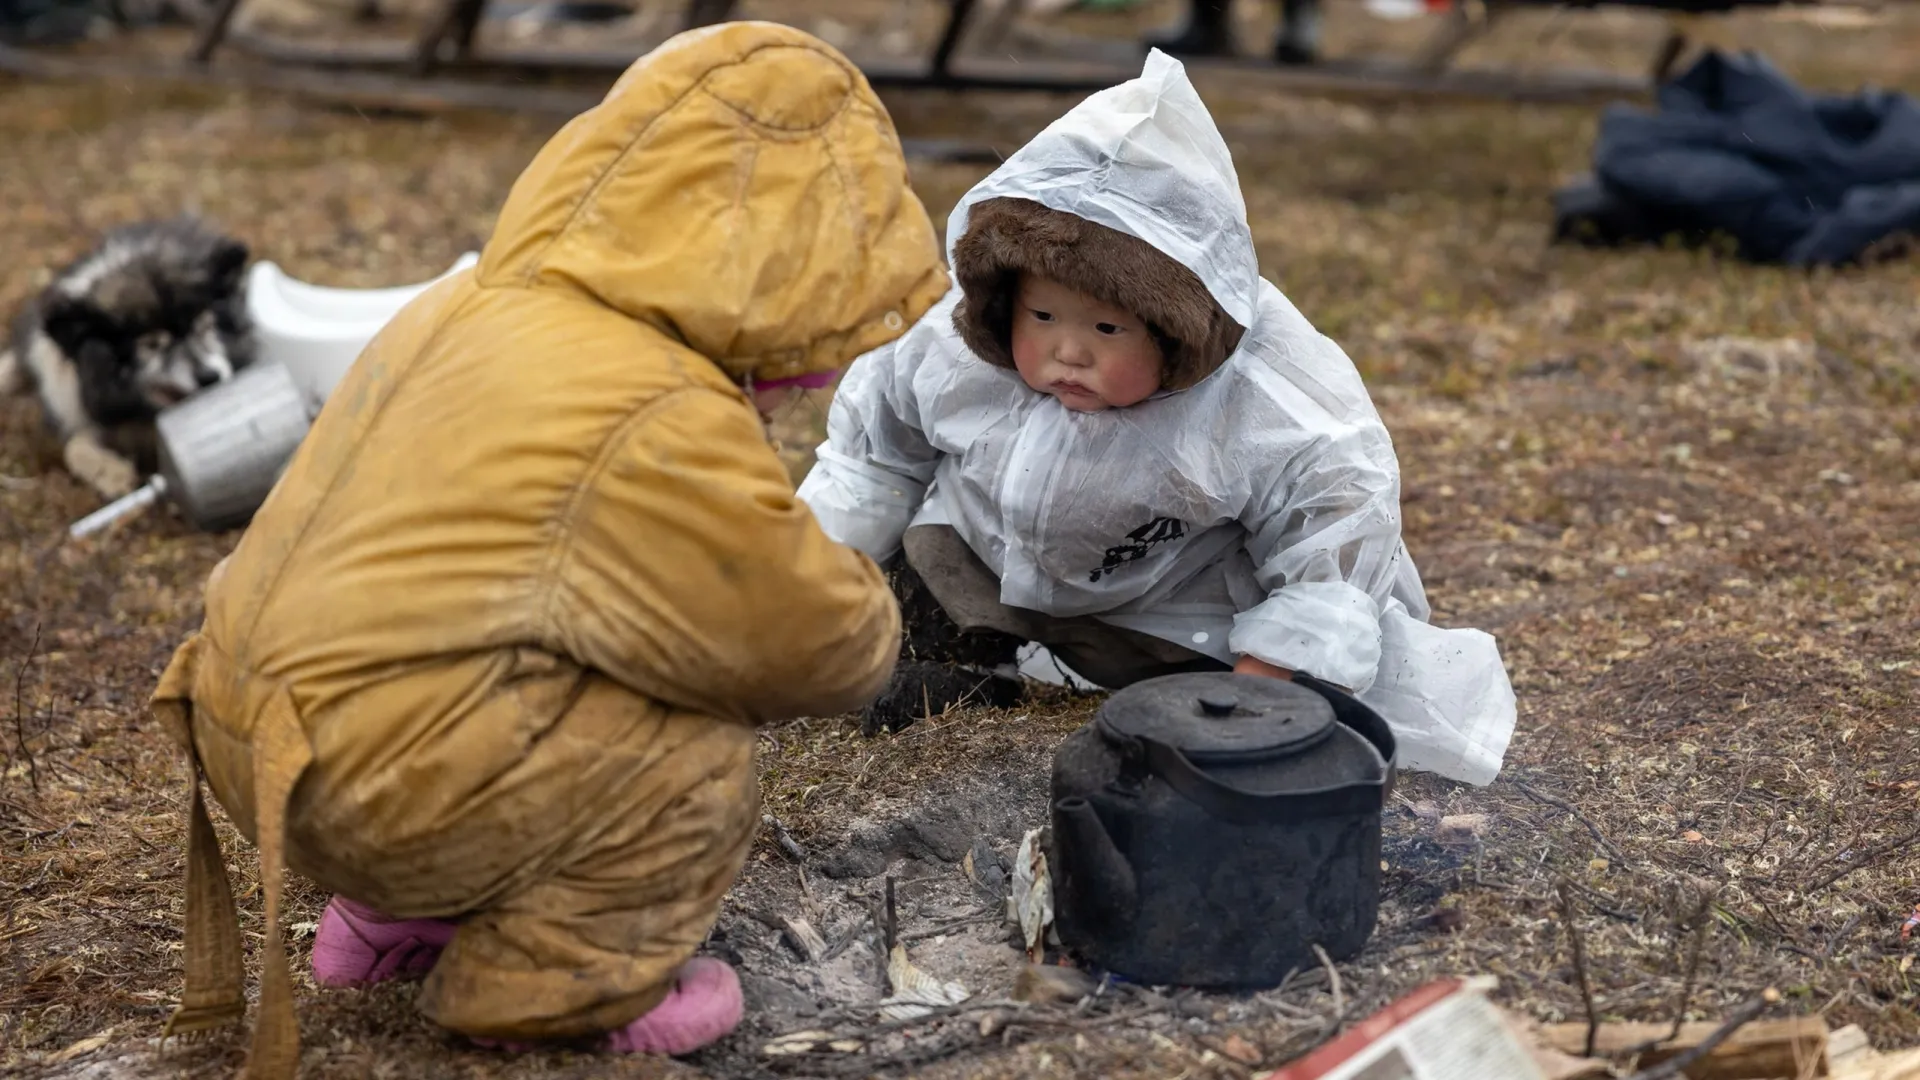 На Ямале в местах кочевий проживает около 1,5 тысячи детей дошкольного возраста. Фото: Фёдор Воронов / «Ямал-Медиа»